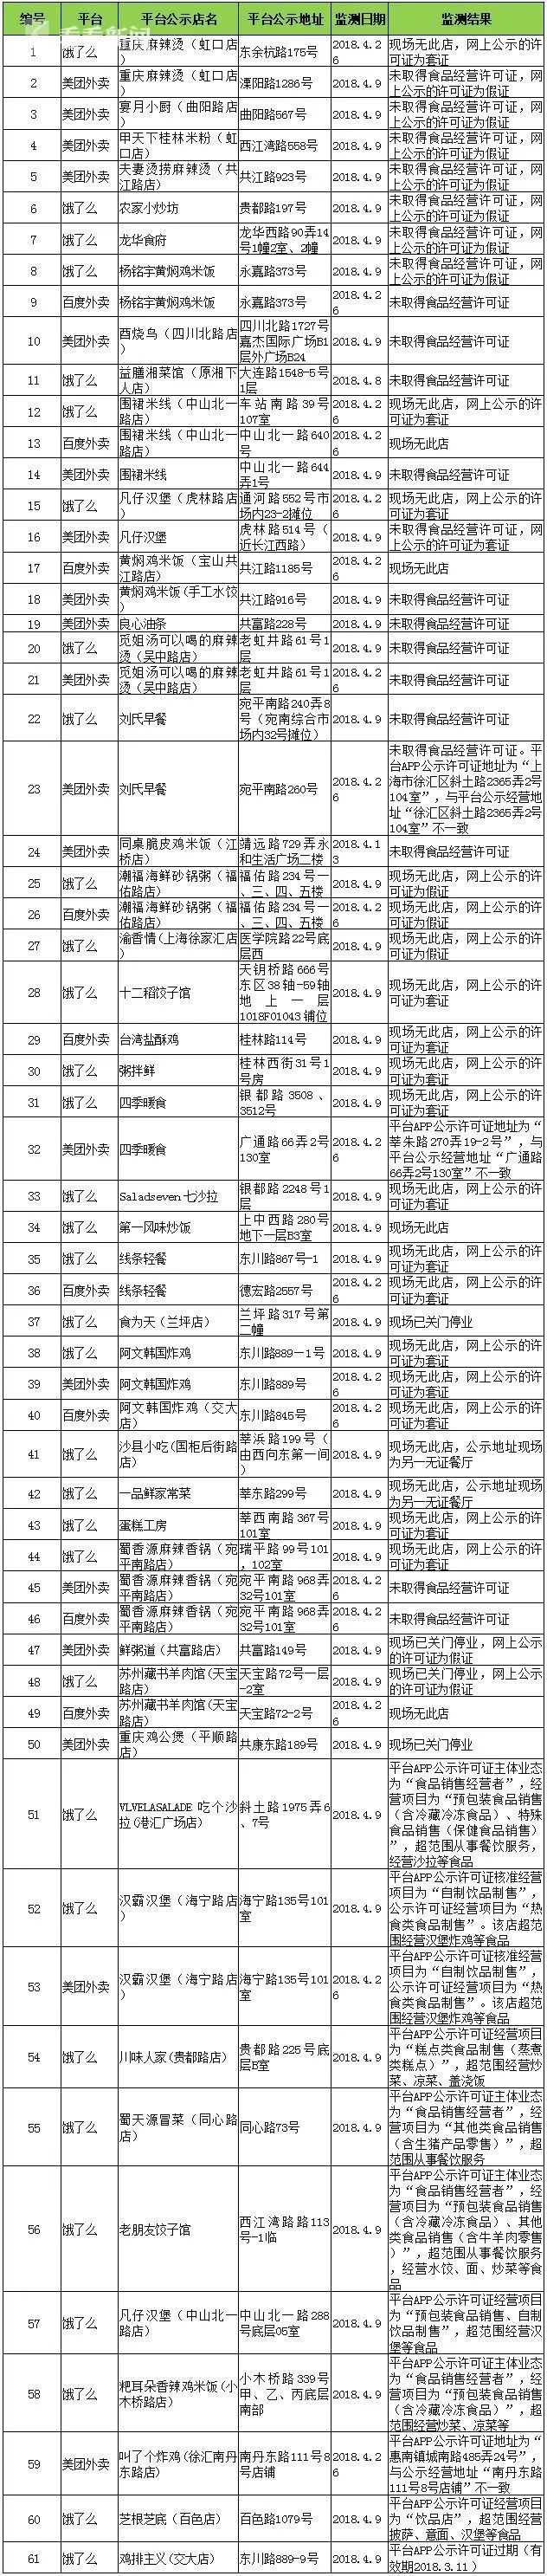 上海食药监局公布61家黑榜餐厅 饿了么占比过半